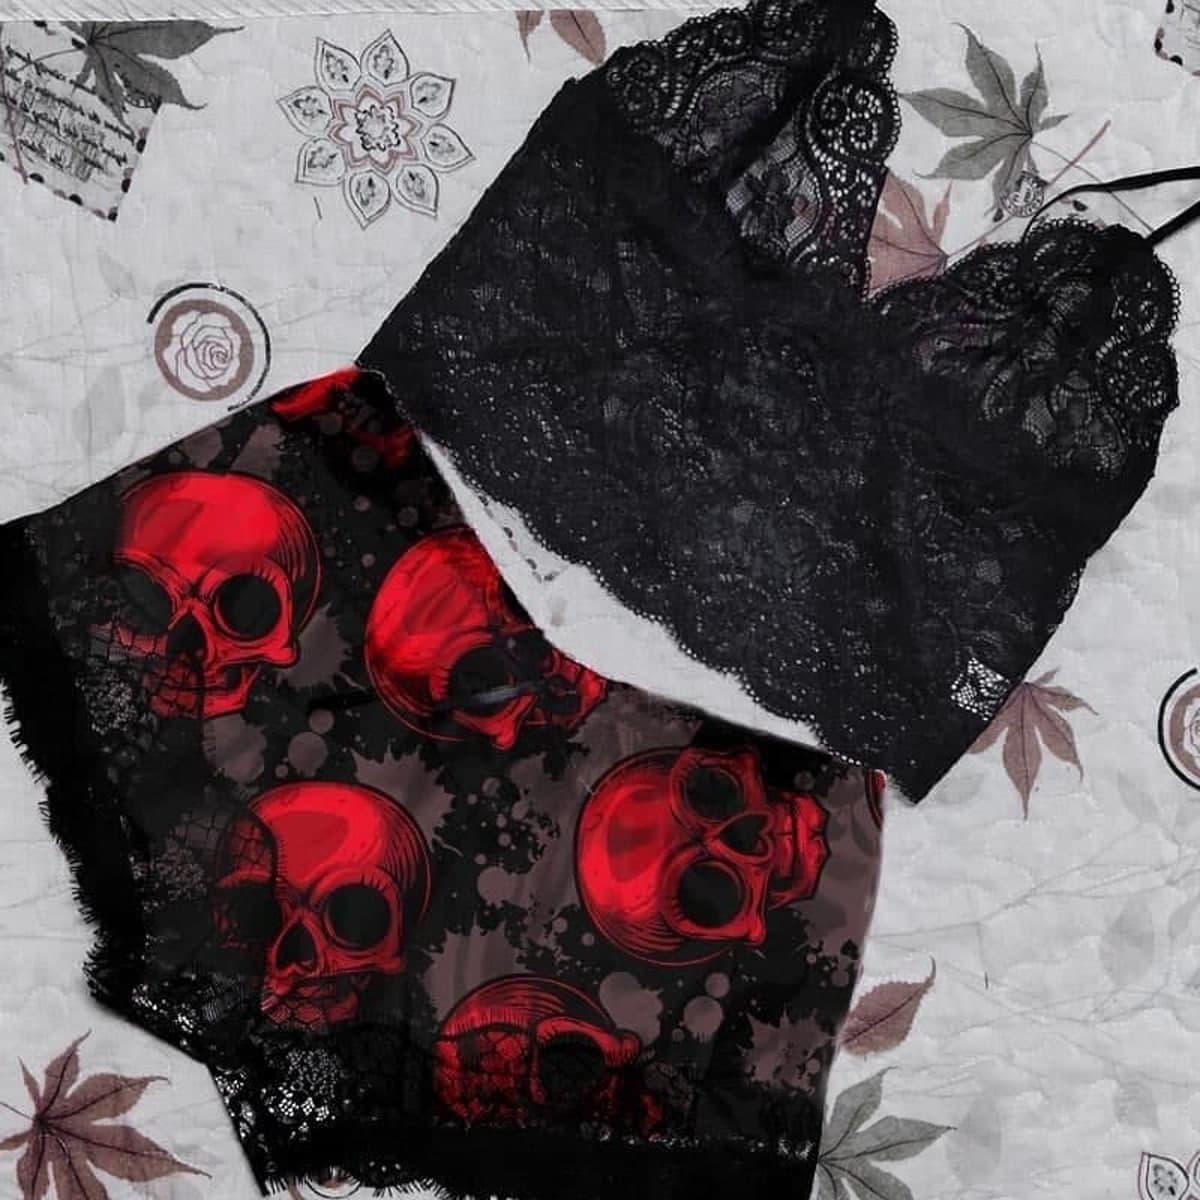 Retro Gothic Skulls Goth Underwear: Underwear From the Underworld, Gothic  Occult Women's Briefs, Gothic Underwear, Woman 